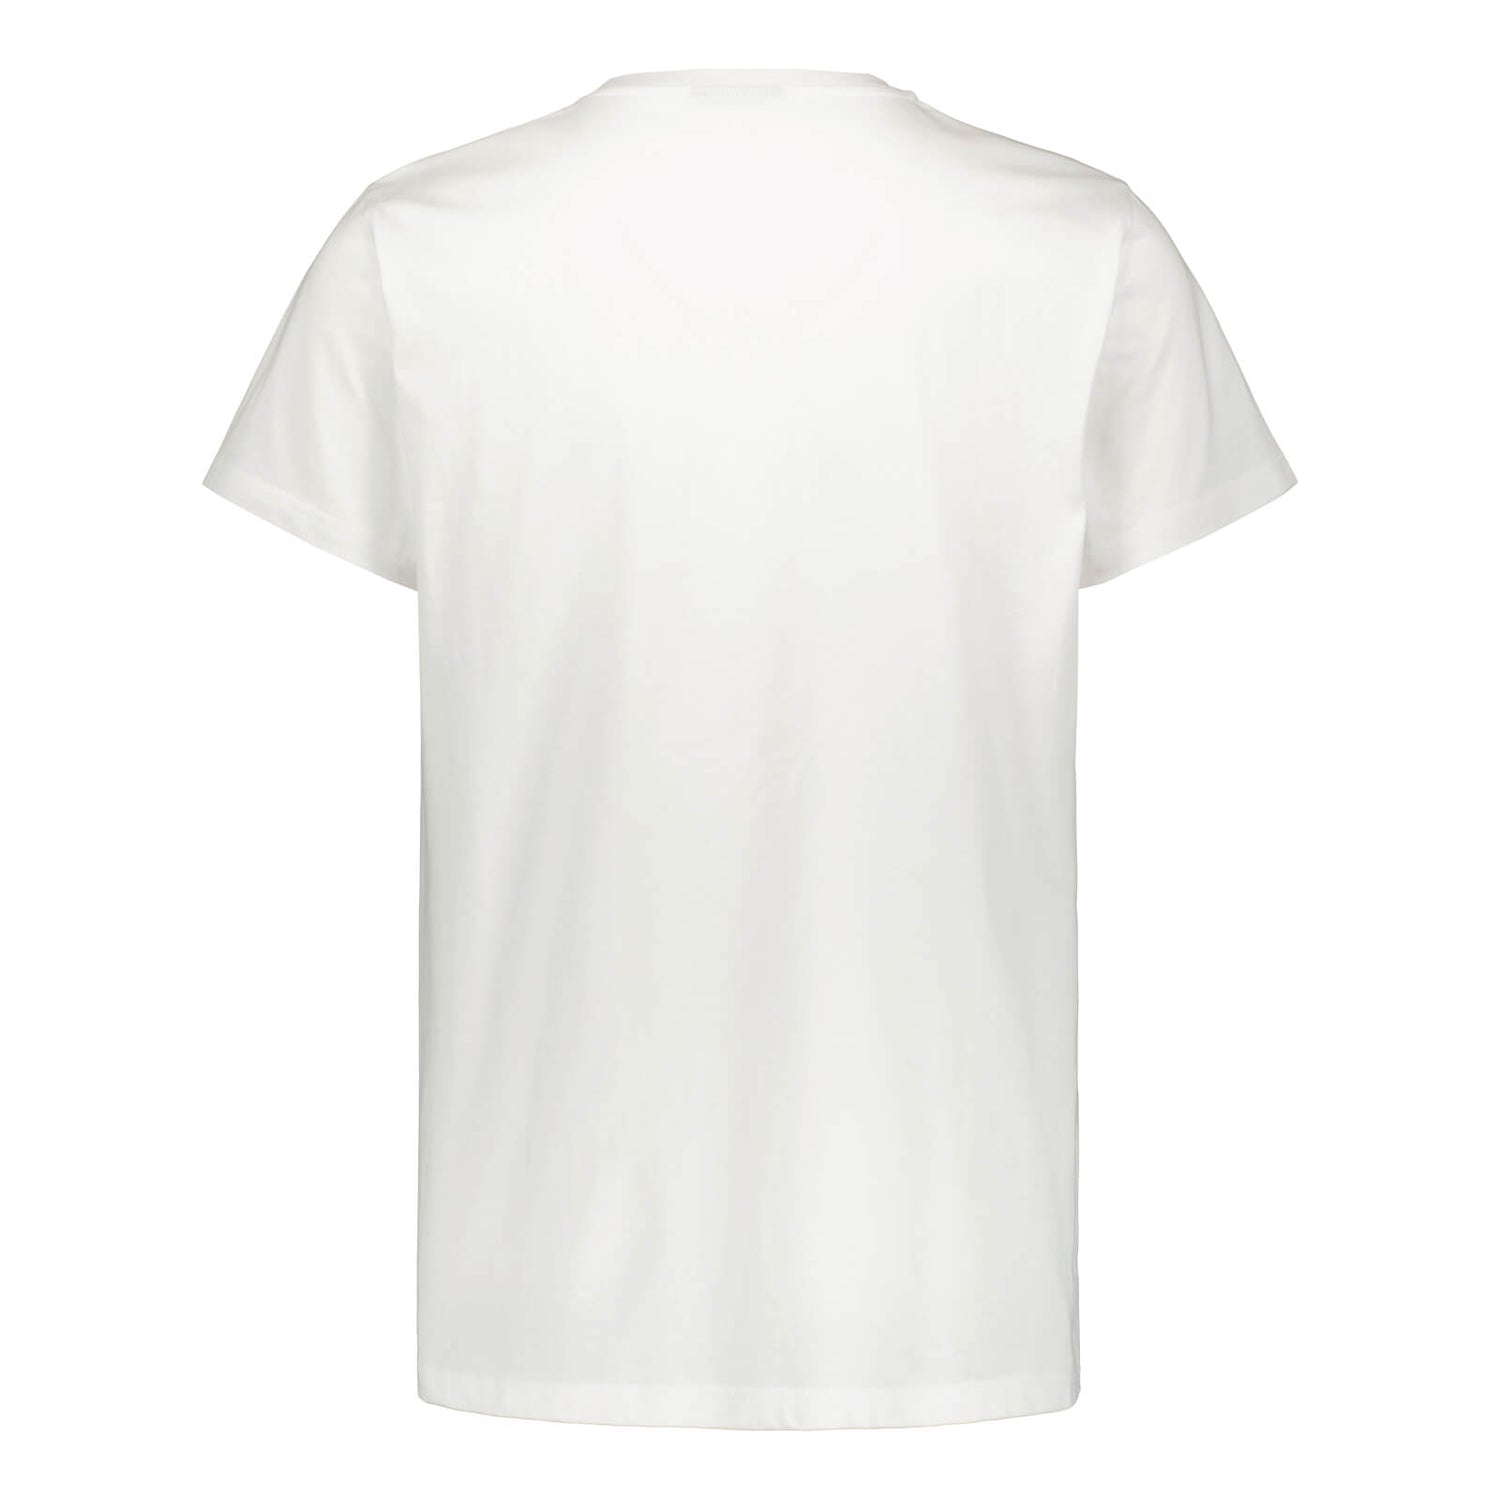 Thumb of Jari Graphic Logo T-shirt, White, Kids